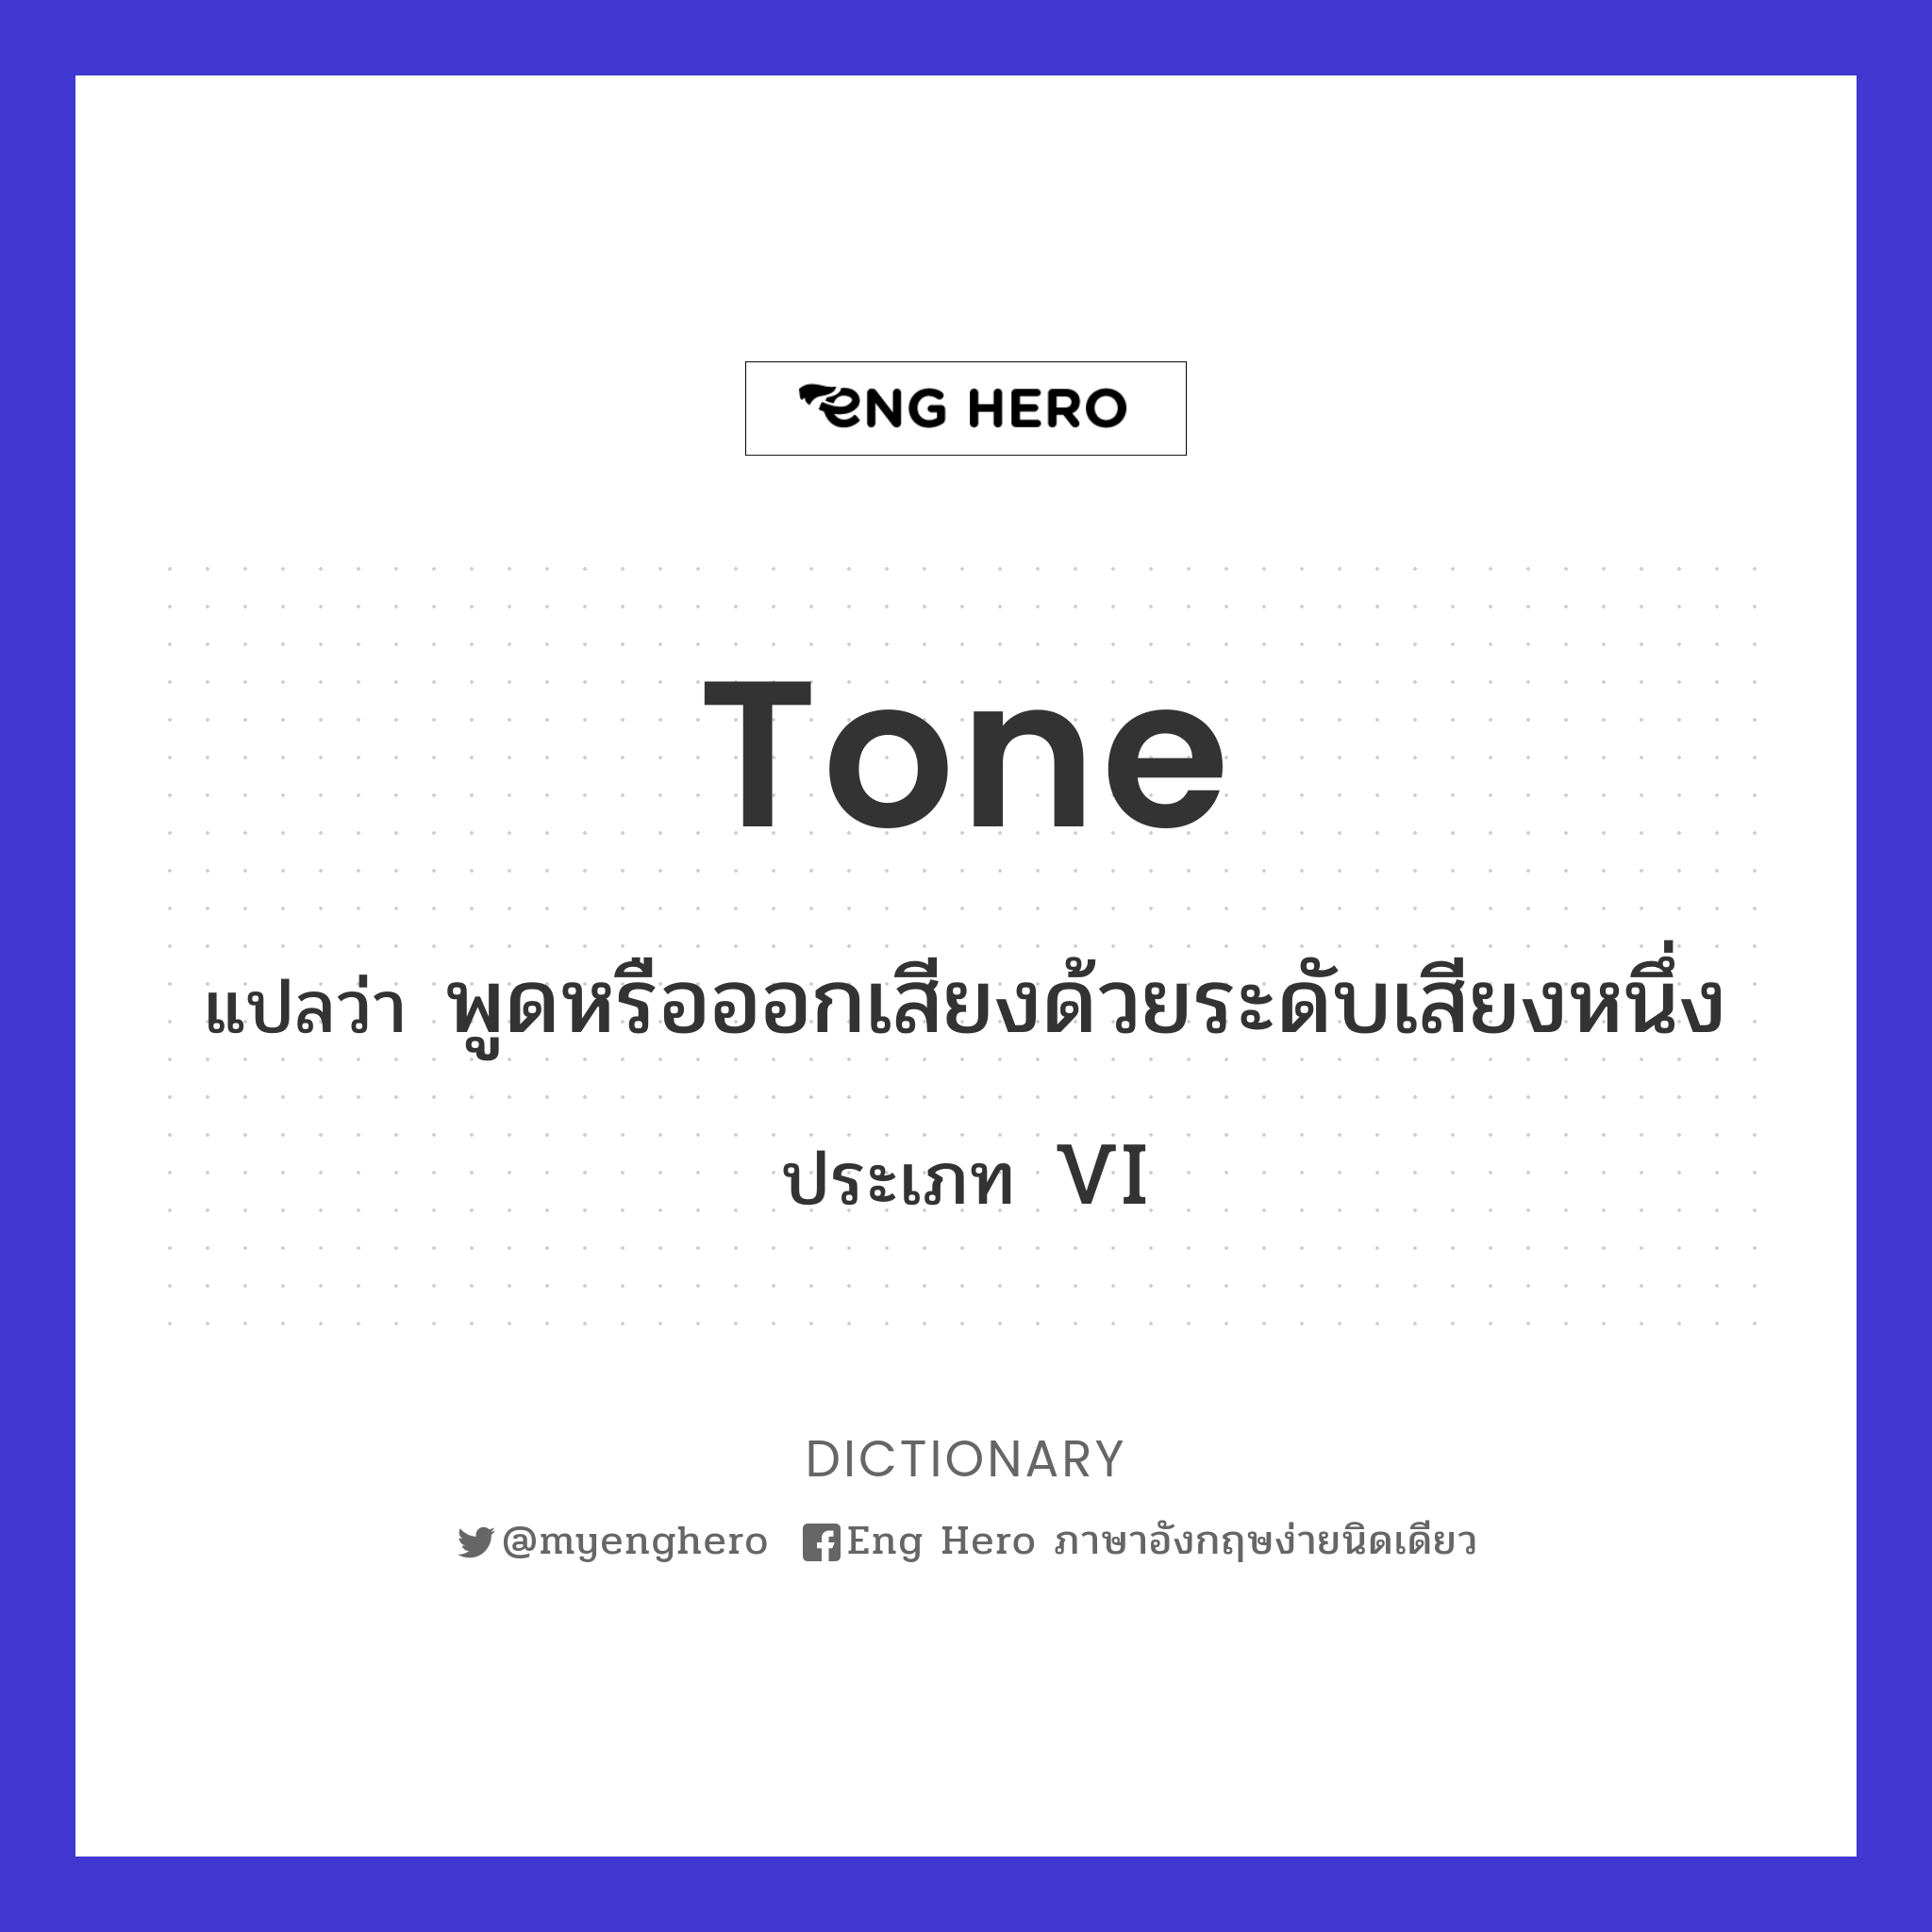 tone